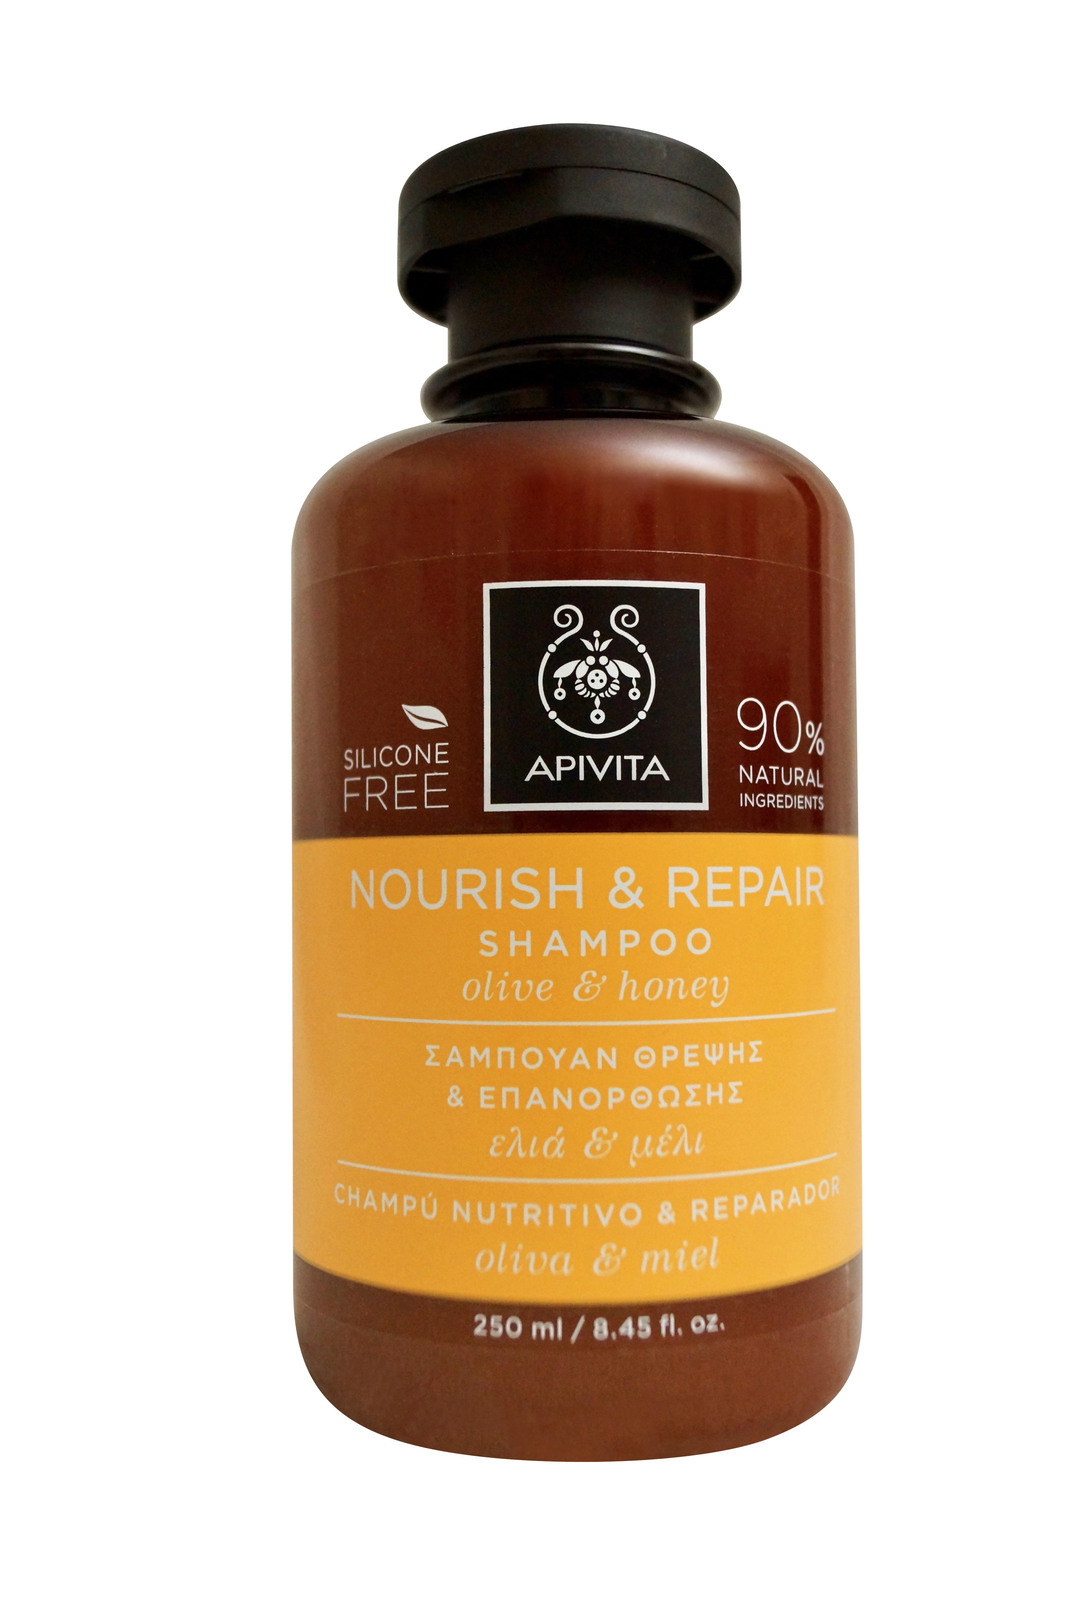 Apivita Nourish & Repair Shampoo Dry & Damaged Hair 8.45 oz. - $12.35